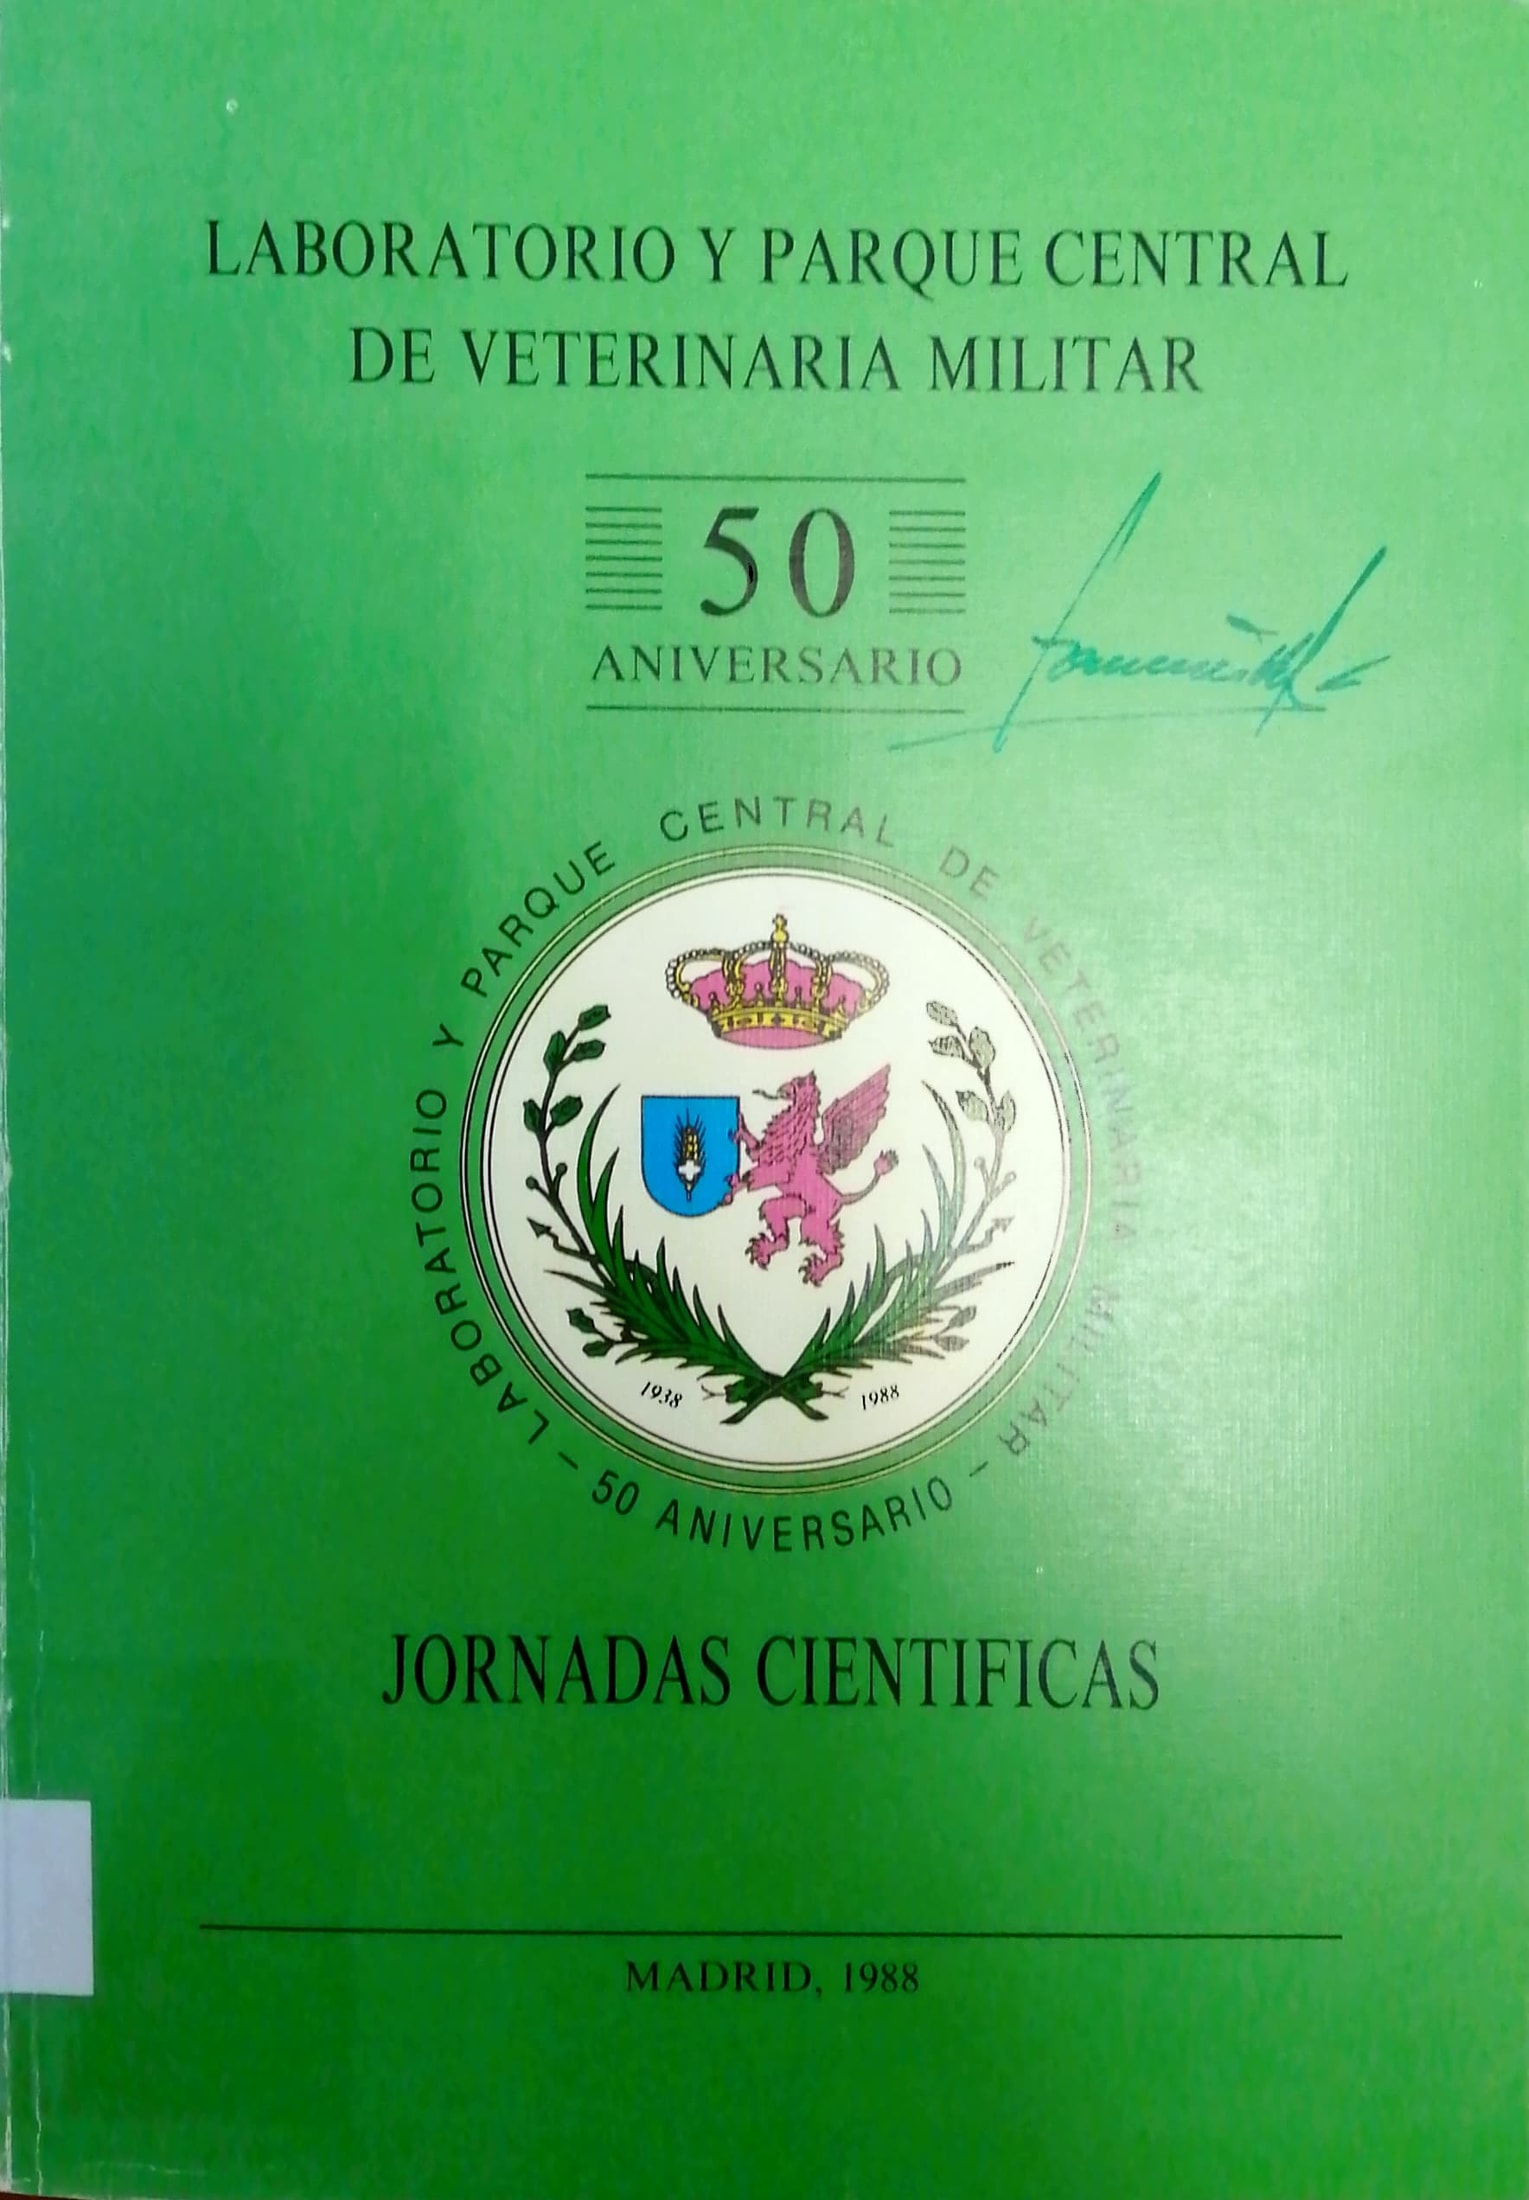 Imagen de portada del libro Laboratorio y Parque Central de Veterinaria Militar